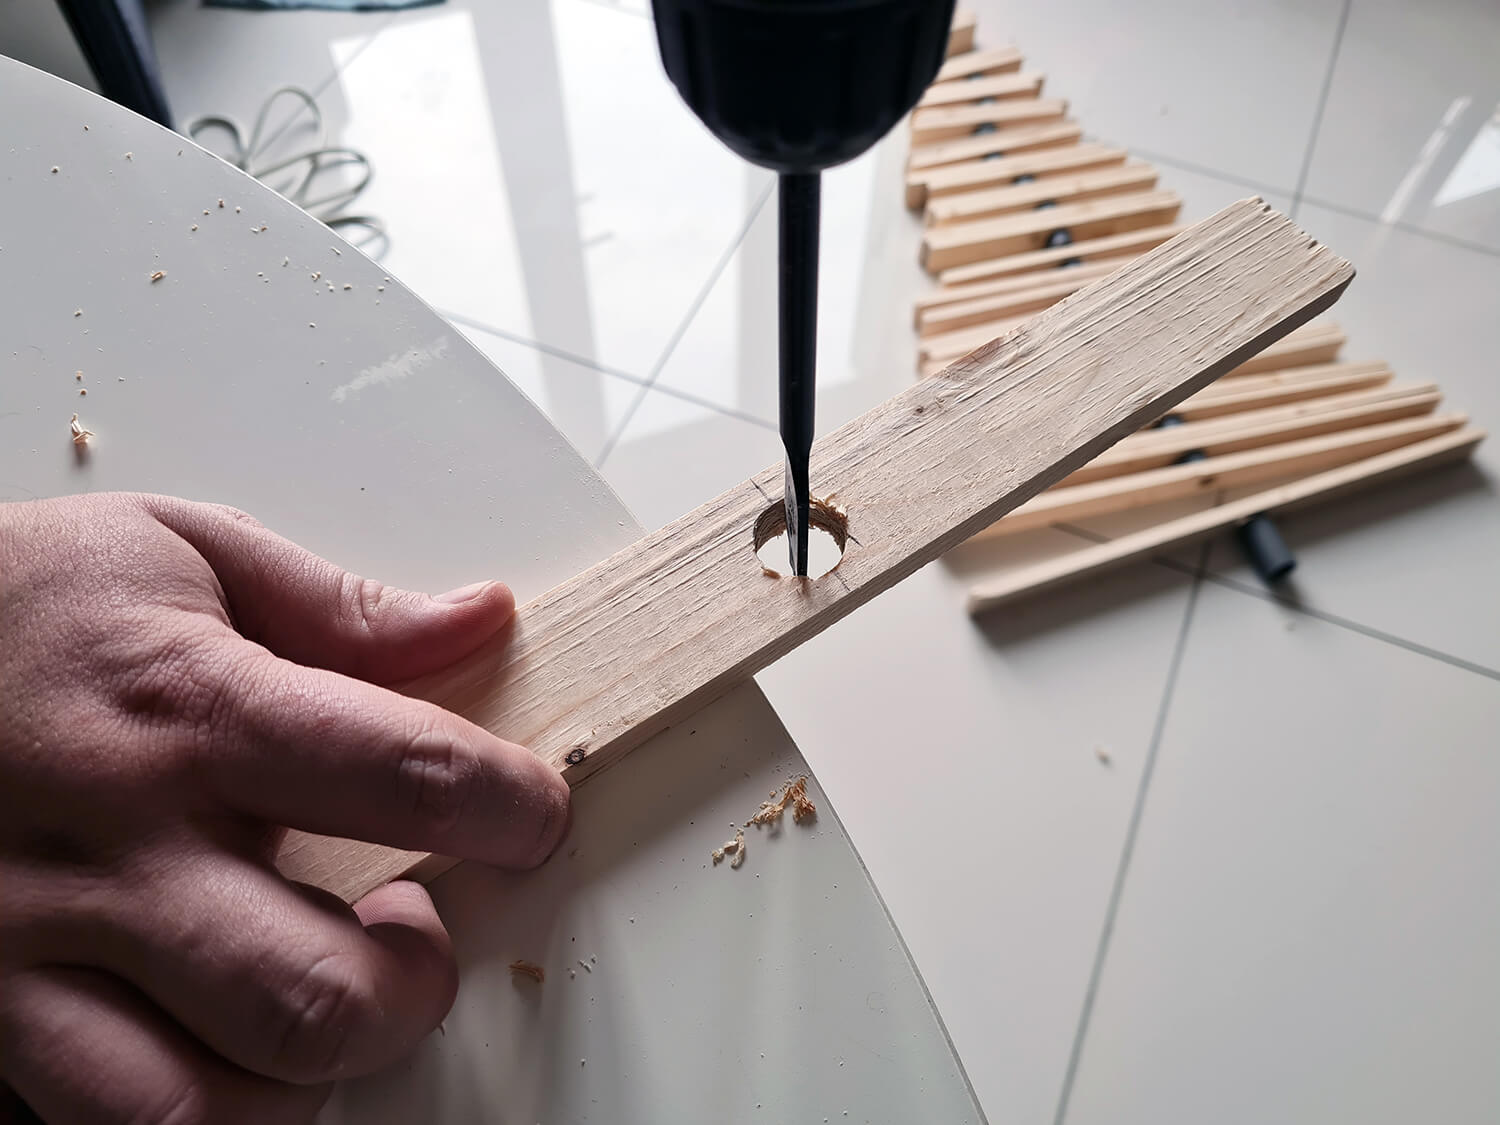 20201206 112048 - DIY récup : fabriquer un sapin de Noël en bois avec des tasseaux